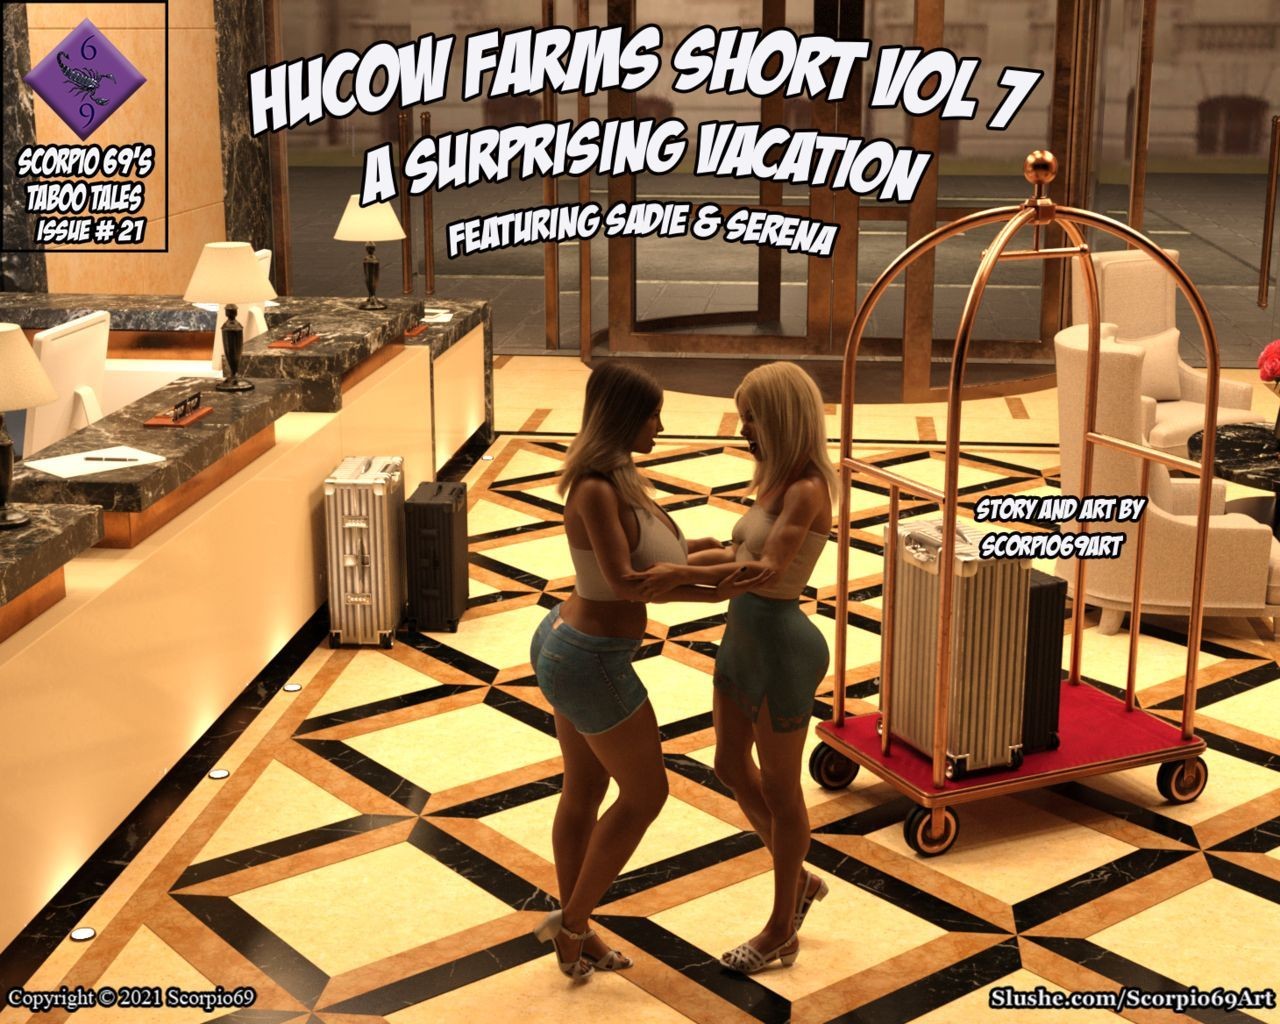 She Hucow Farms Short Vol 7 - A Surprising Vacation (Ongoing) Denmark